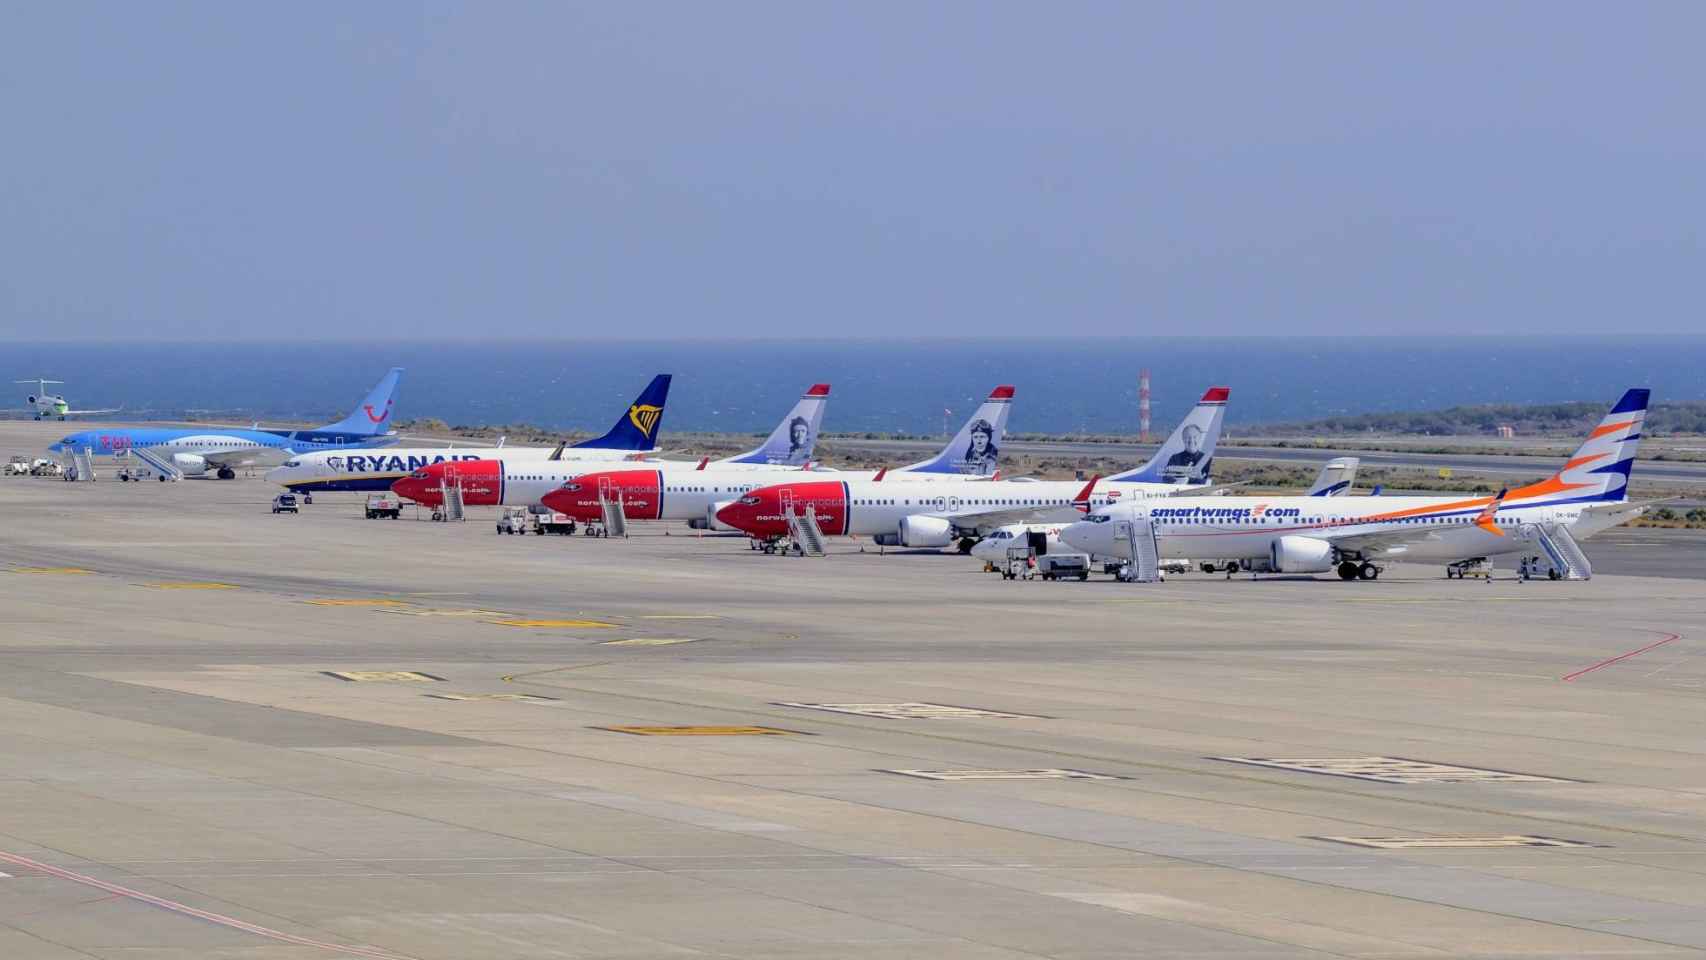 Aviones Boeing 737 Max estacionados en el aeropuerto de Gran Canaria.